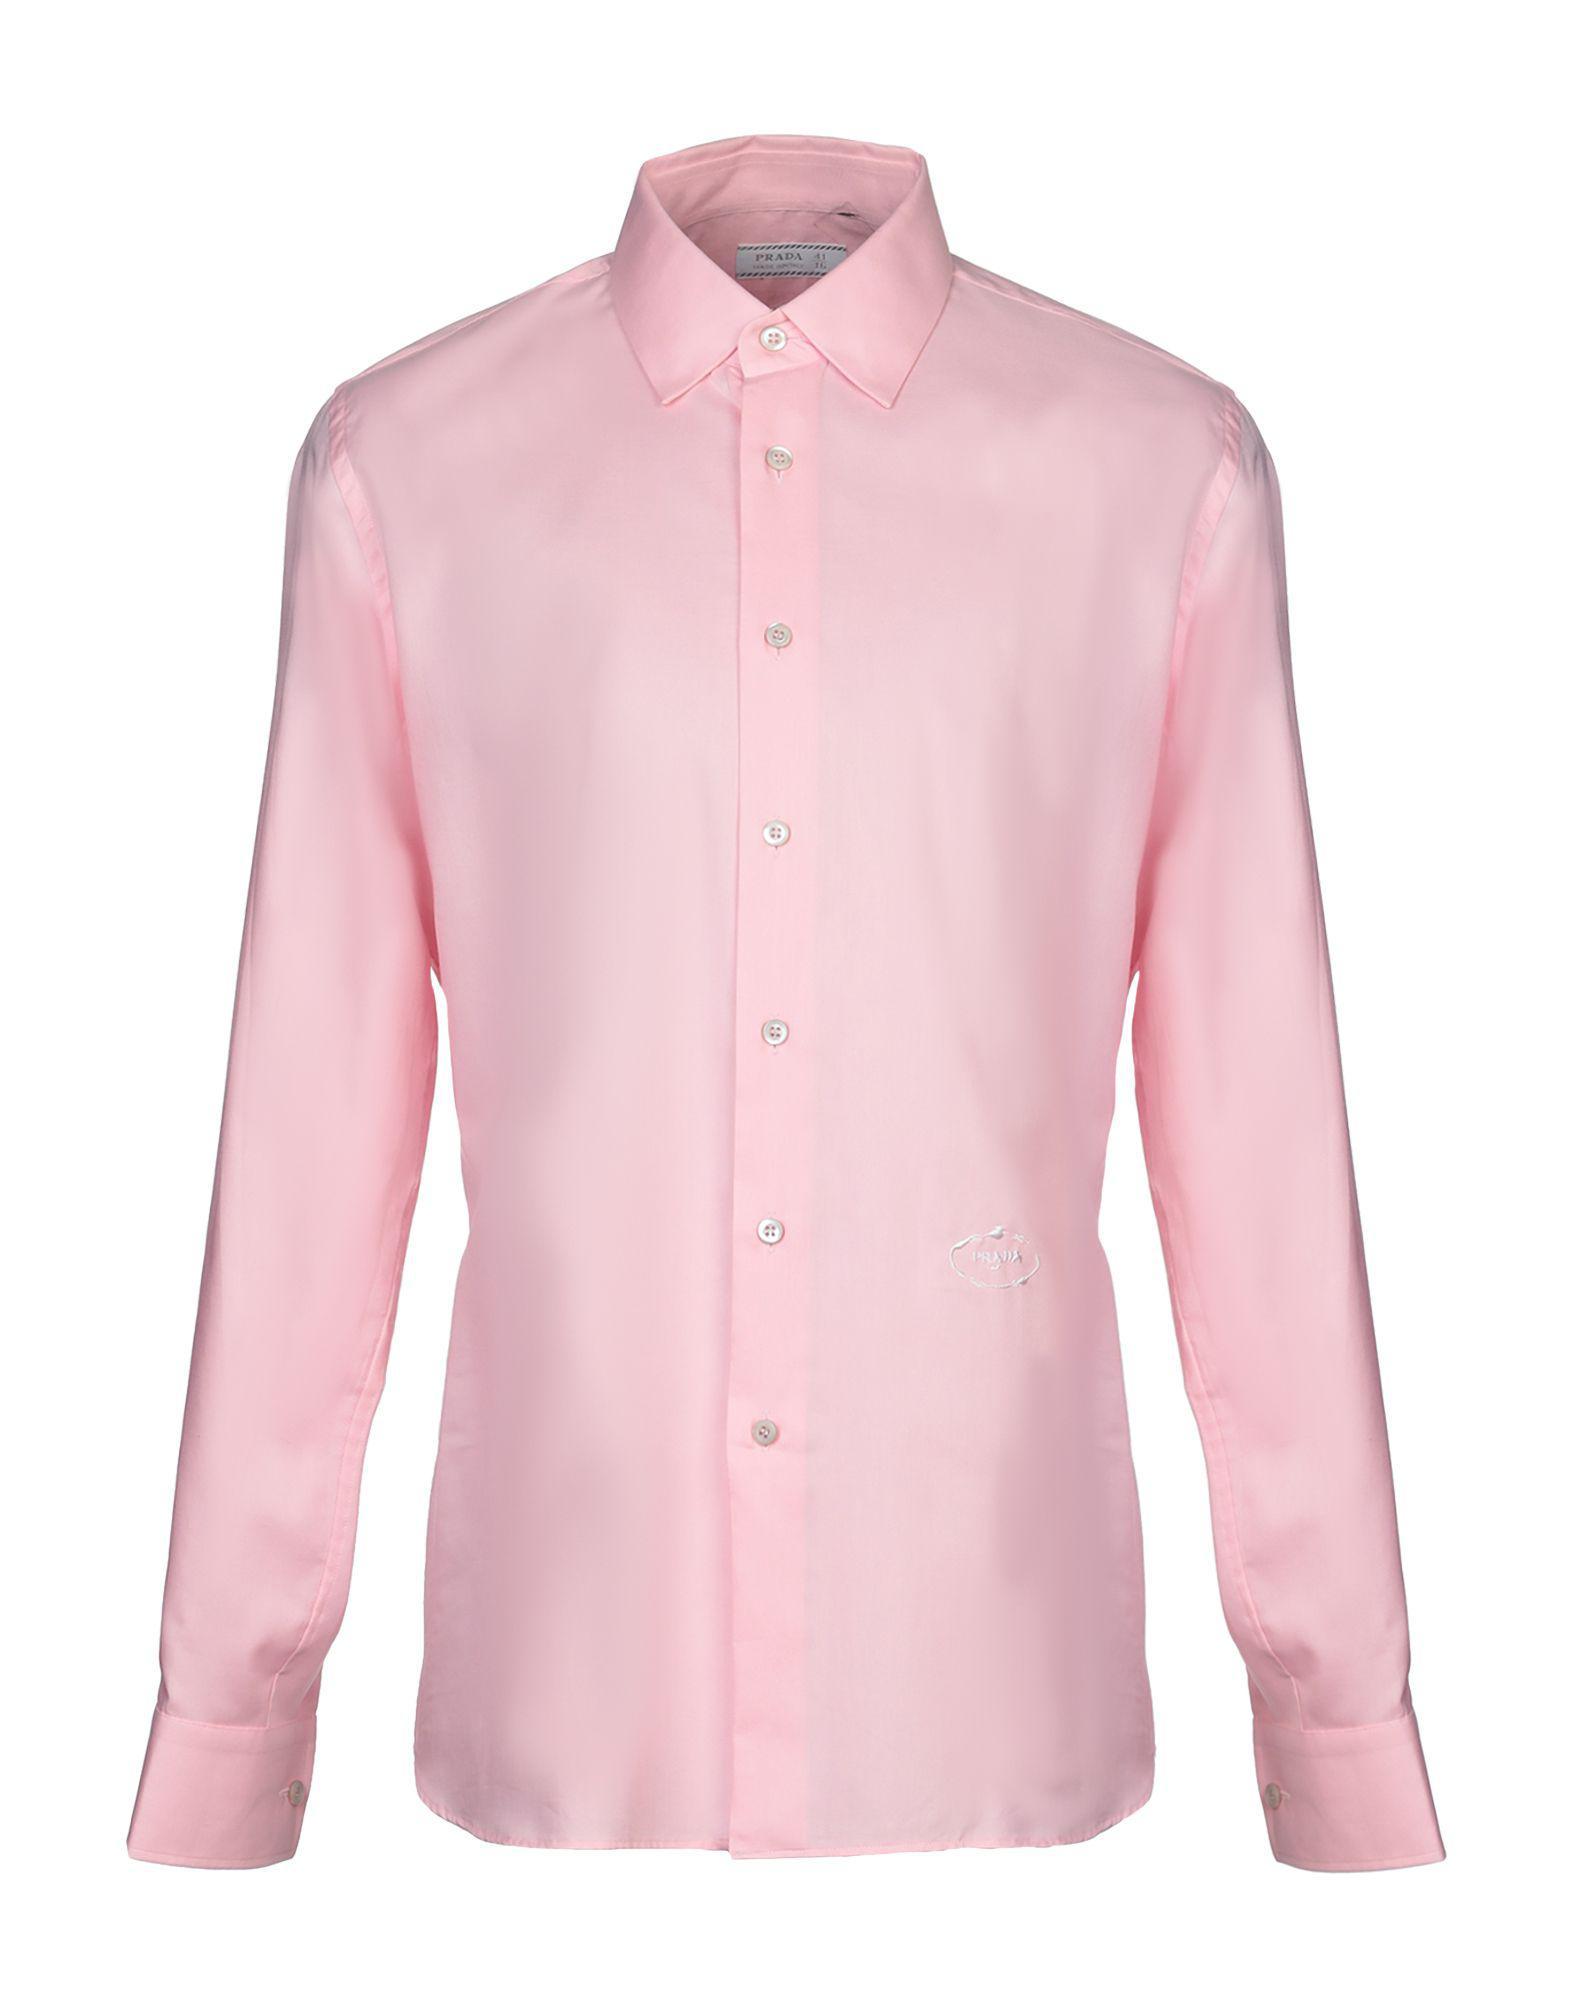 Prada Shirt in Pink for Men - Lyst